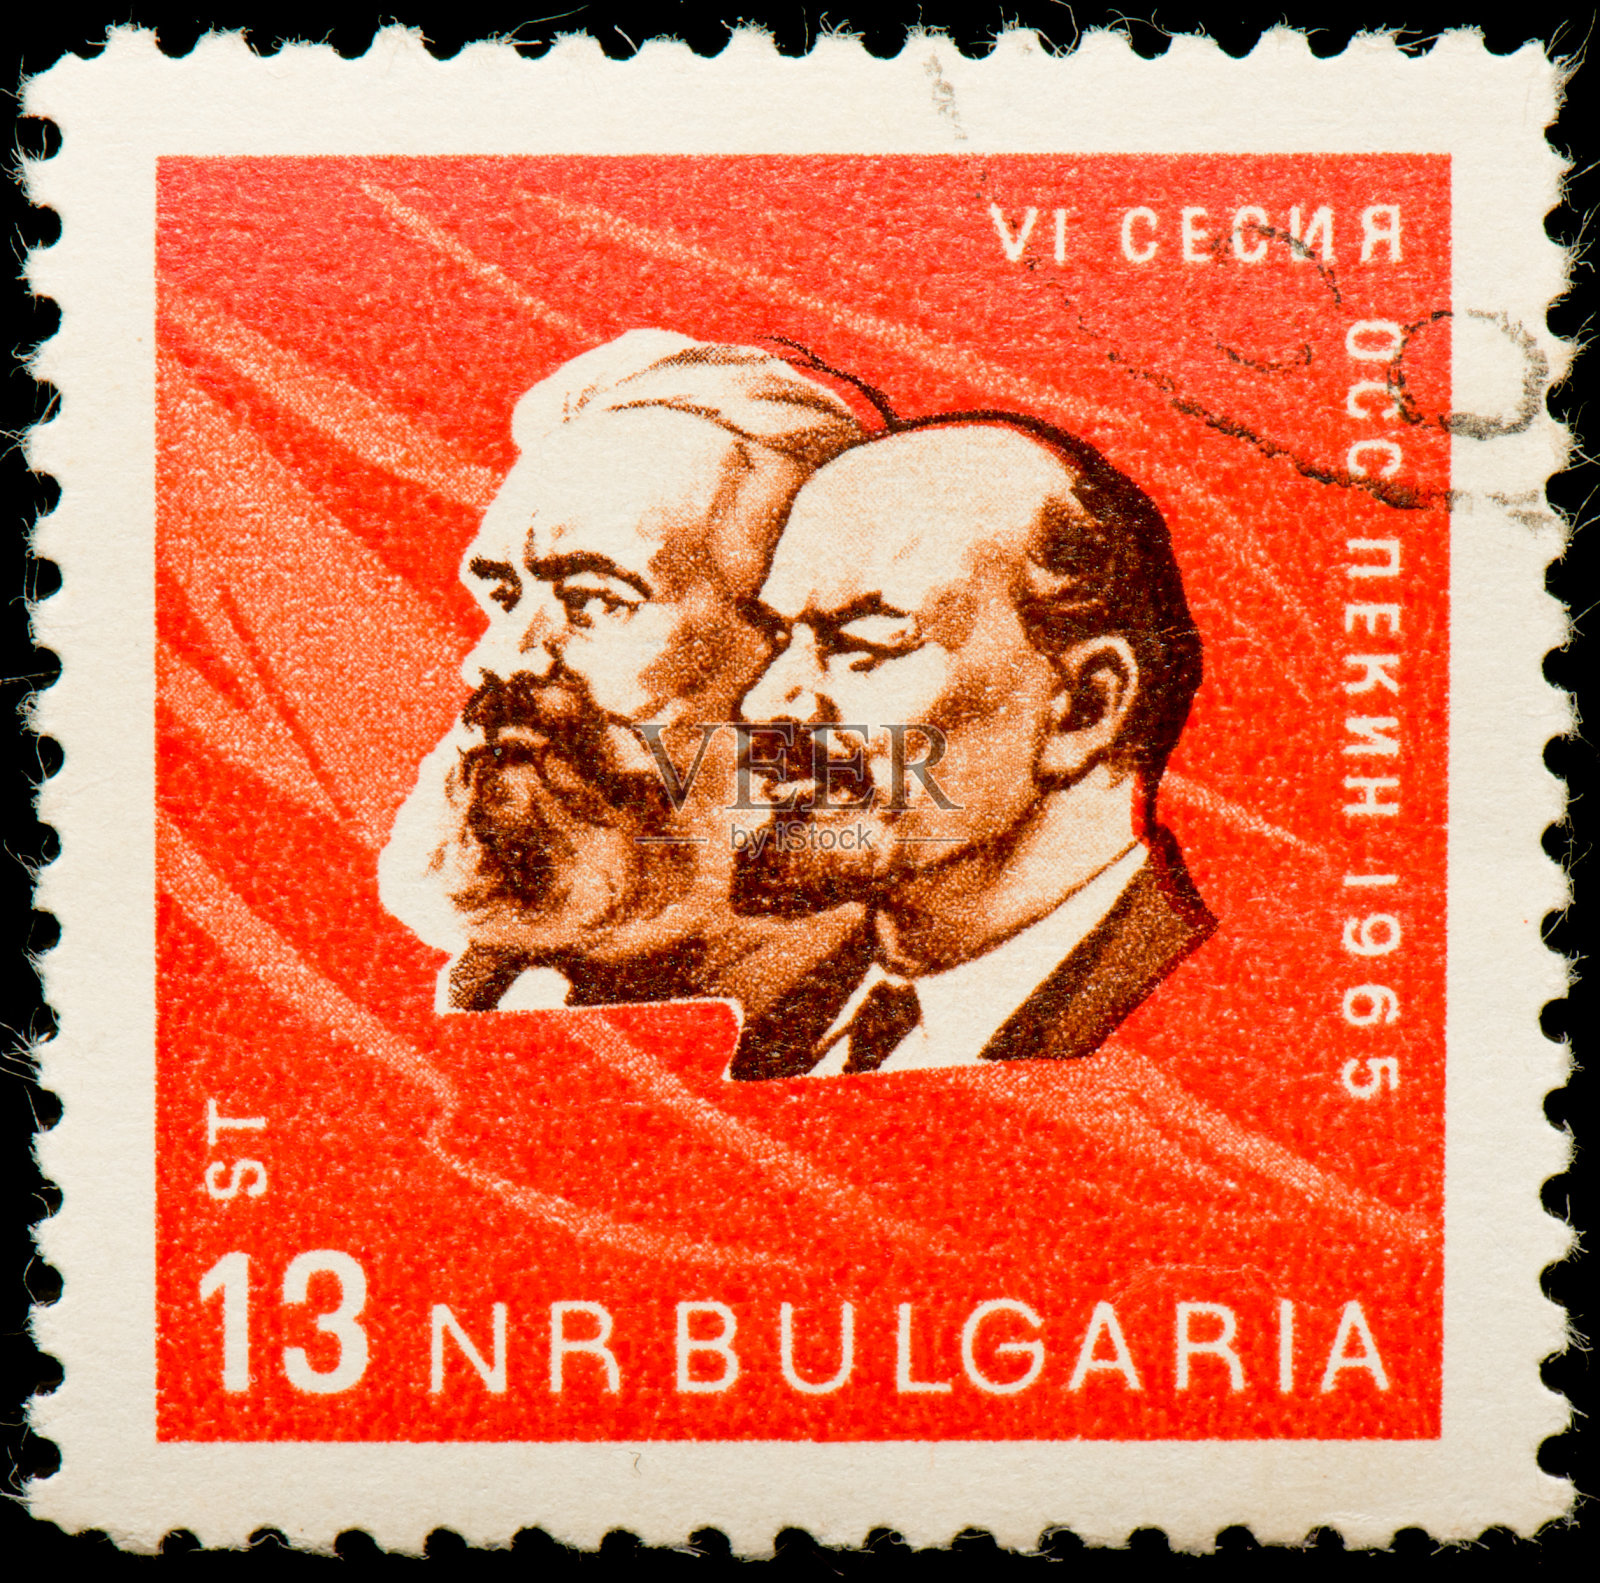 一枚保加利亚邮票，献给列宁和马克思照片摄影图片